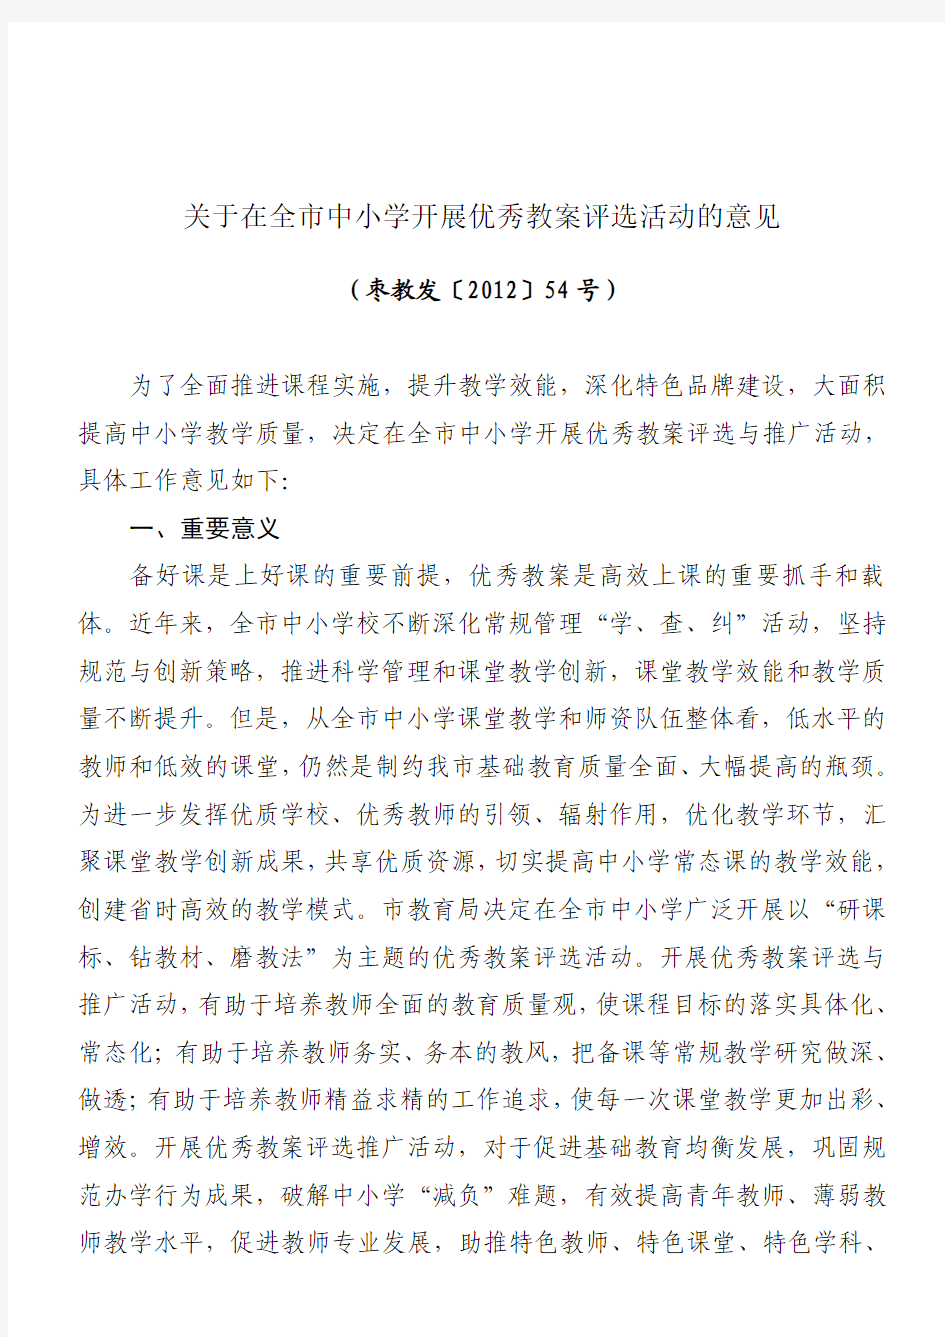 枣庄市初中语文优秀教案评选办法